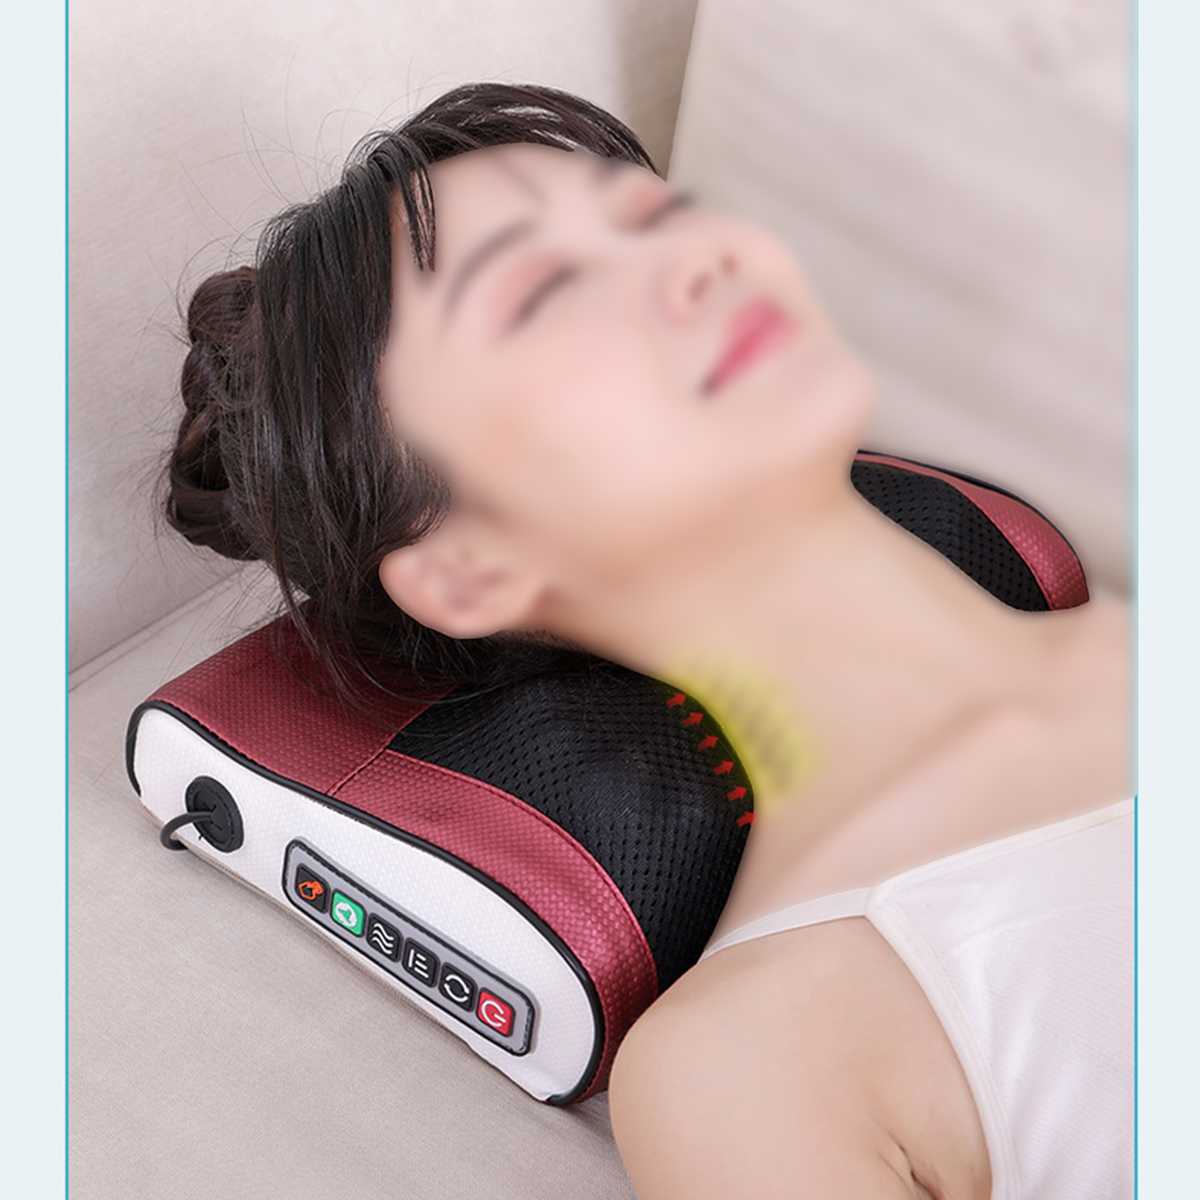 Nacken-Nacken-Halsmassagegerät Elektrisch Einstellung BRIGHTAKE beheiztes 3-stufige PU-Leder Nacken-Massagegerät Massagekissen